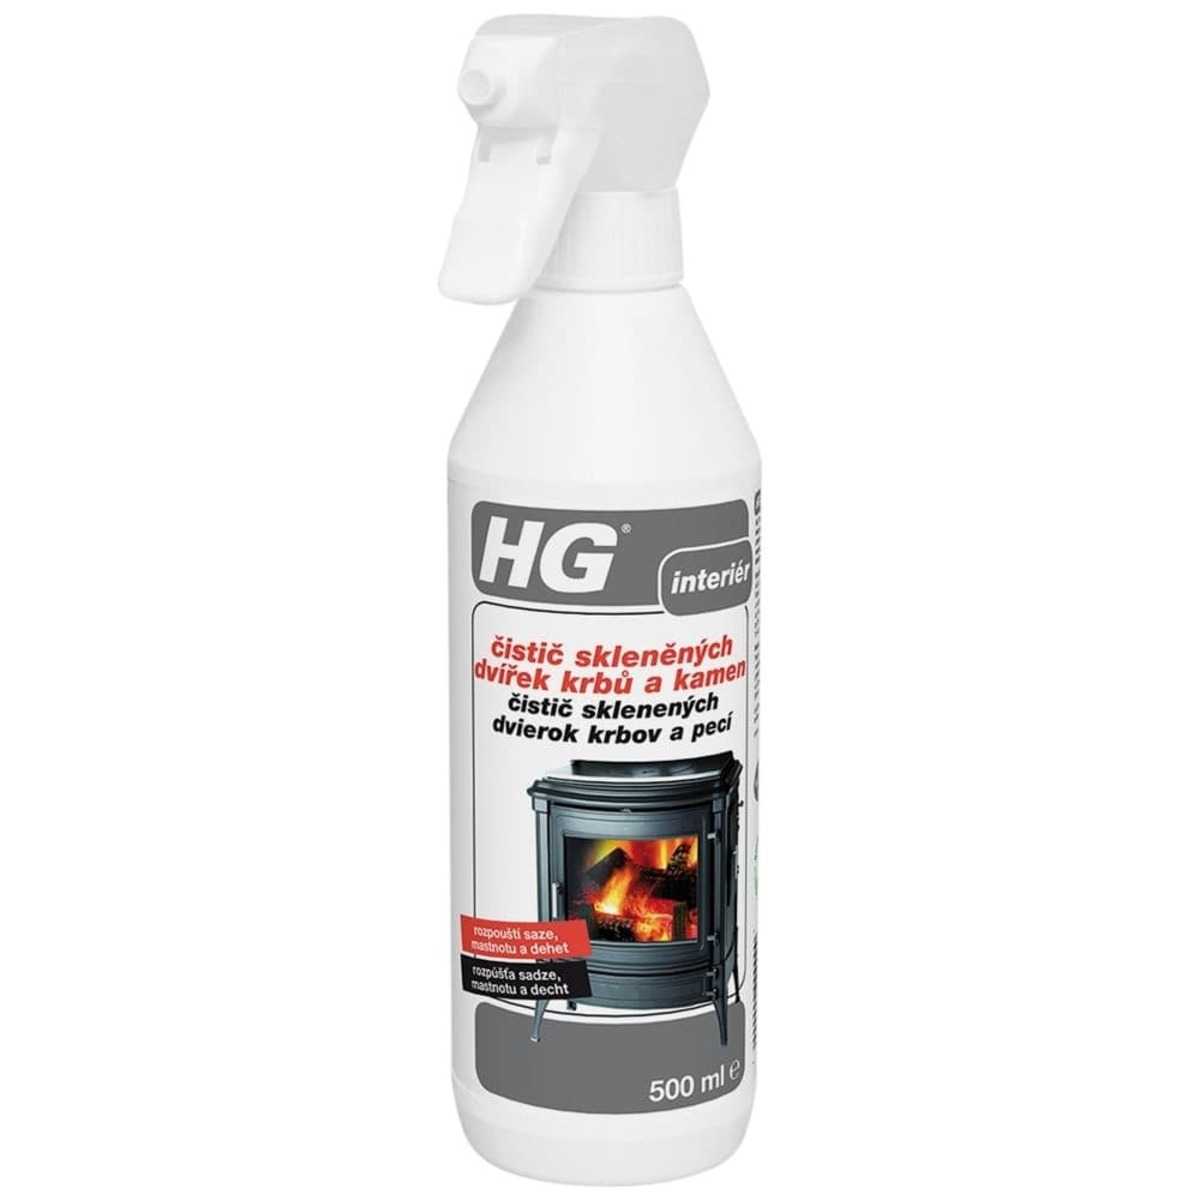 HG čistič skleněných dvířek krbů a kamen HGCSDK HG